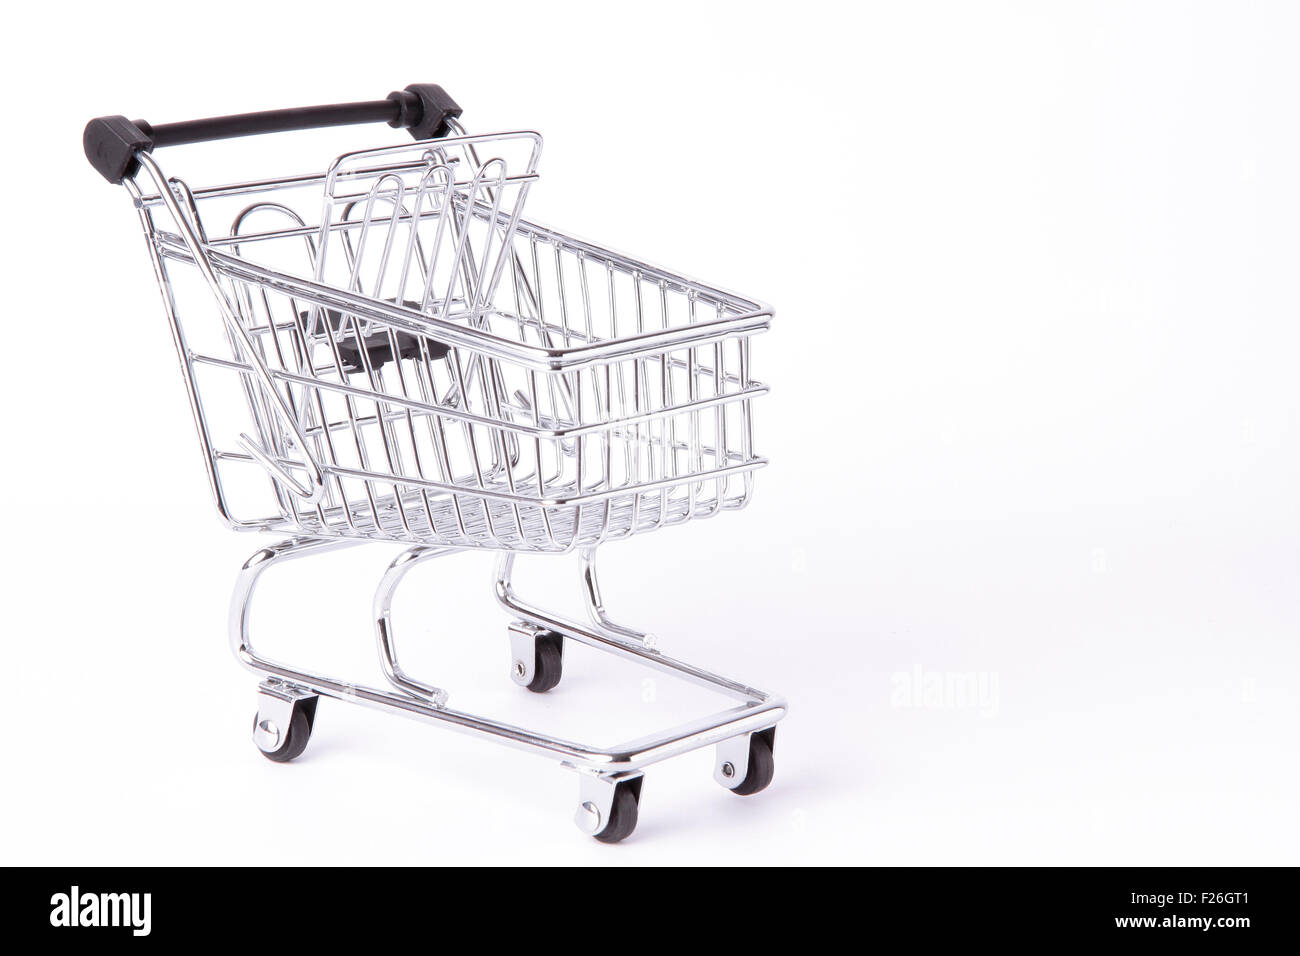 empty shopping cart isolated on white background Stock Photo